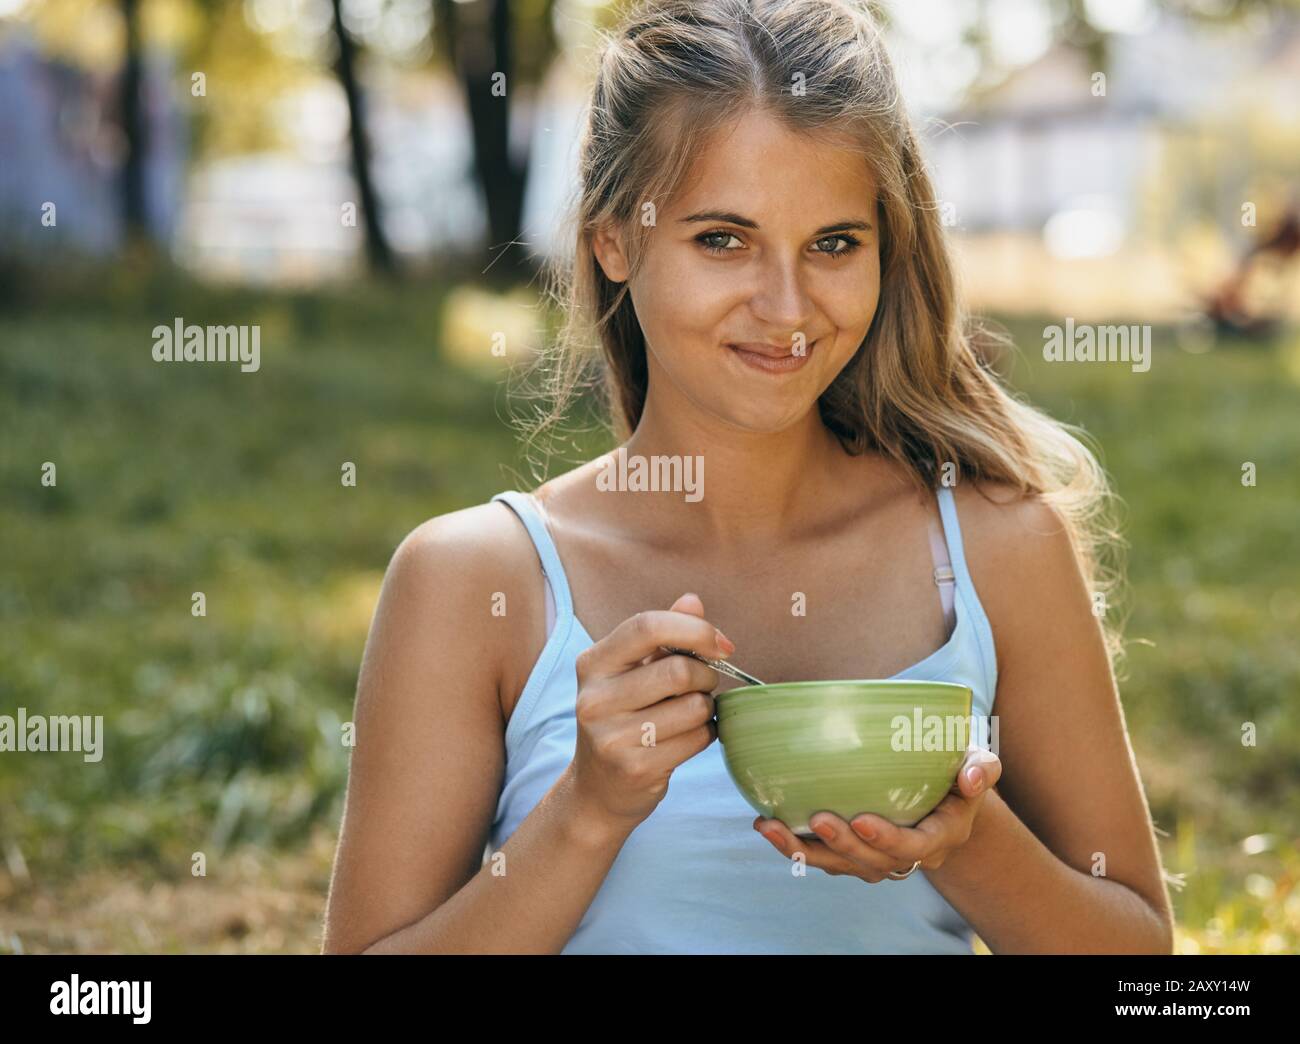 Porträt einer fröhlichen lächelnden jungen Frau, die Nudeln isst Stockfoto